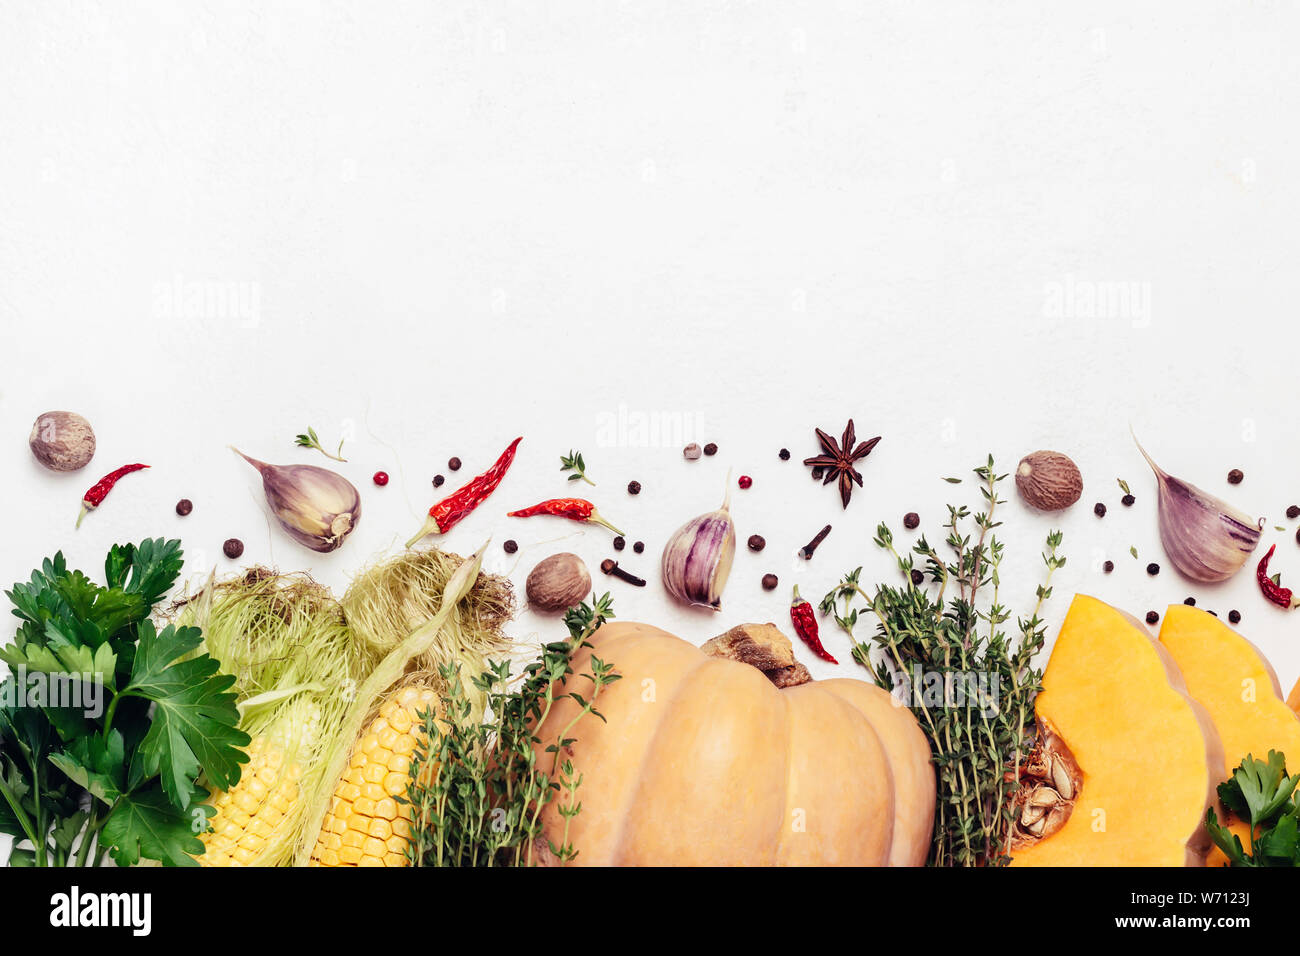 Herbst Gemüse, Kräutern und Gewürzen. Thanksgiving Essen Konzept. Stockfoto